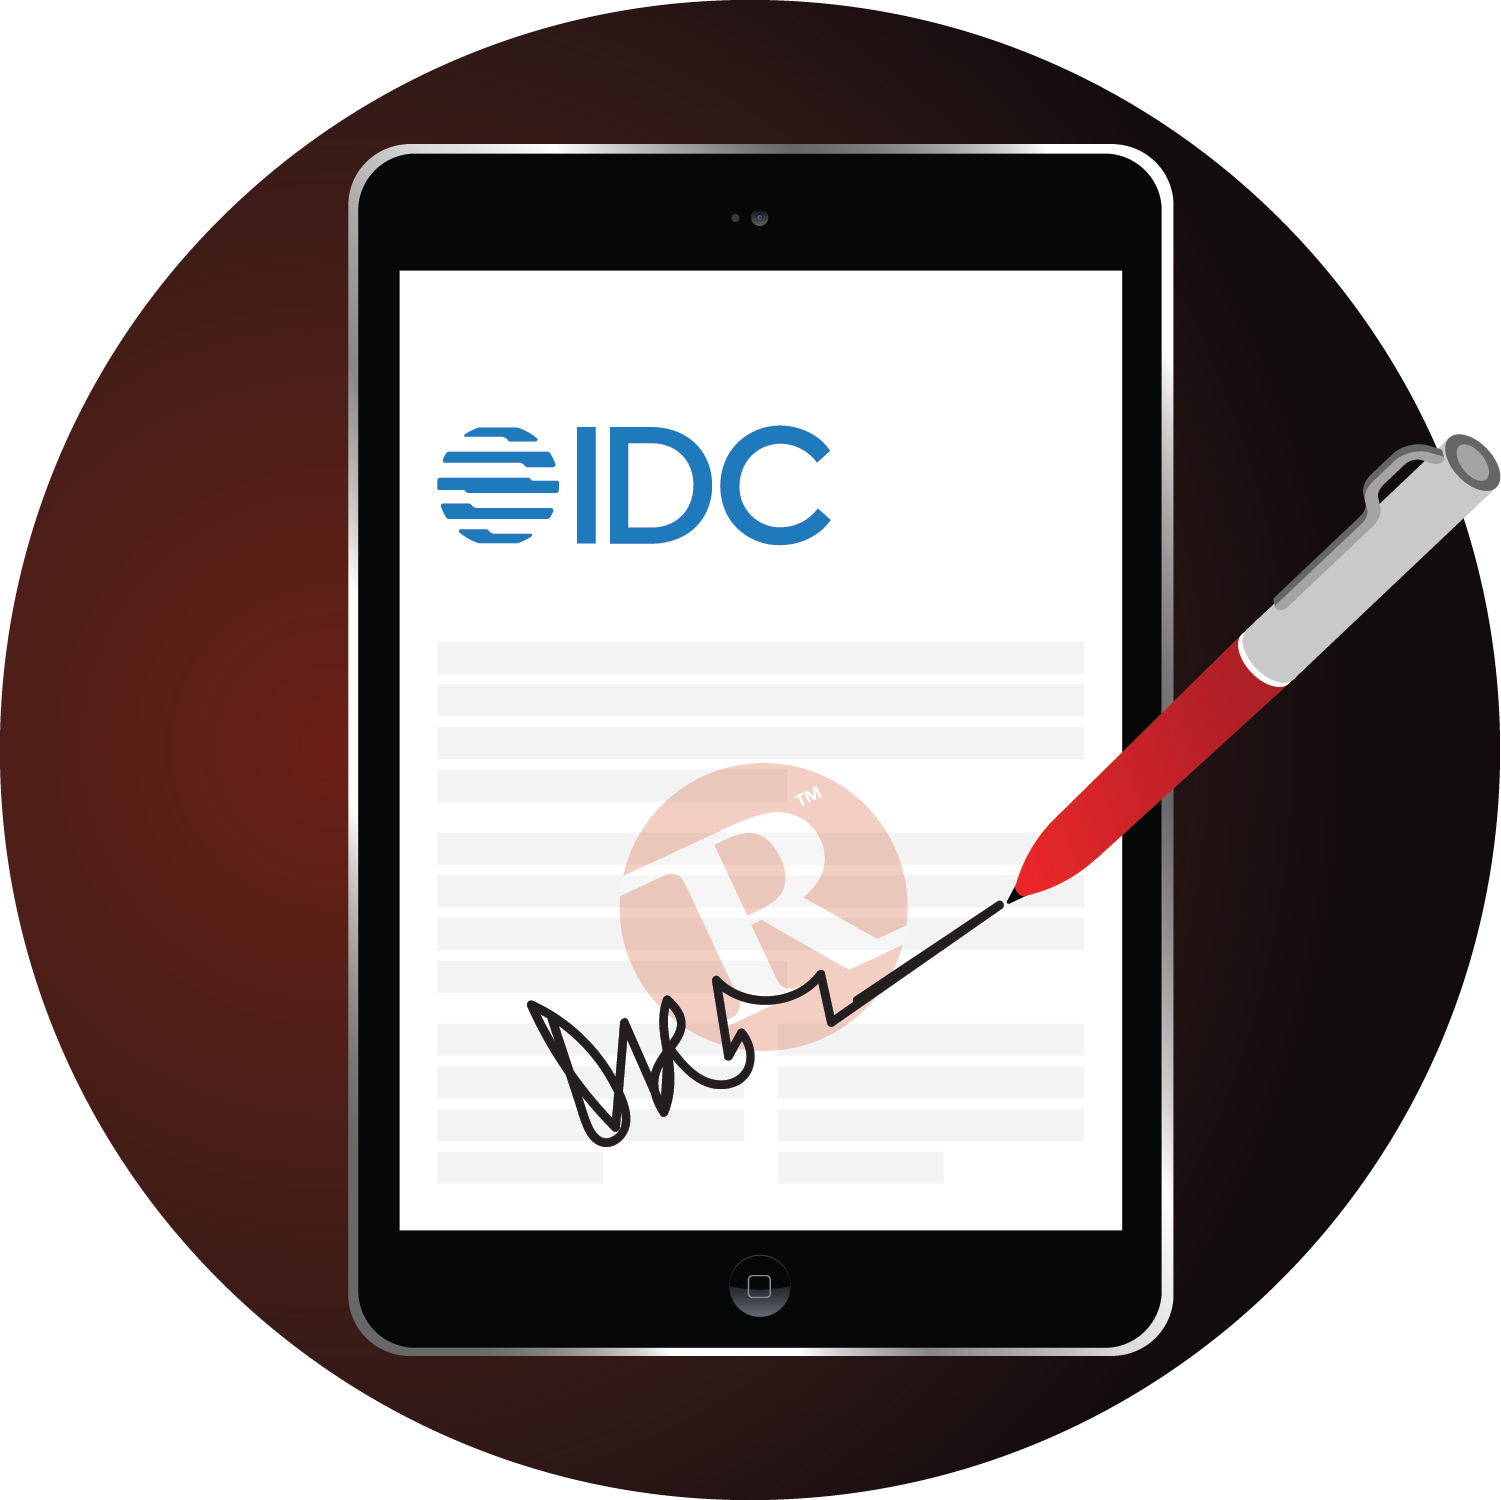 IDC MarketScape eSignature Software